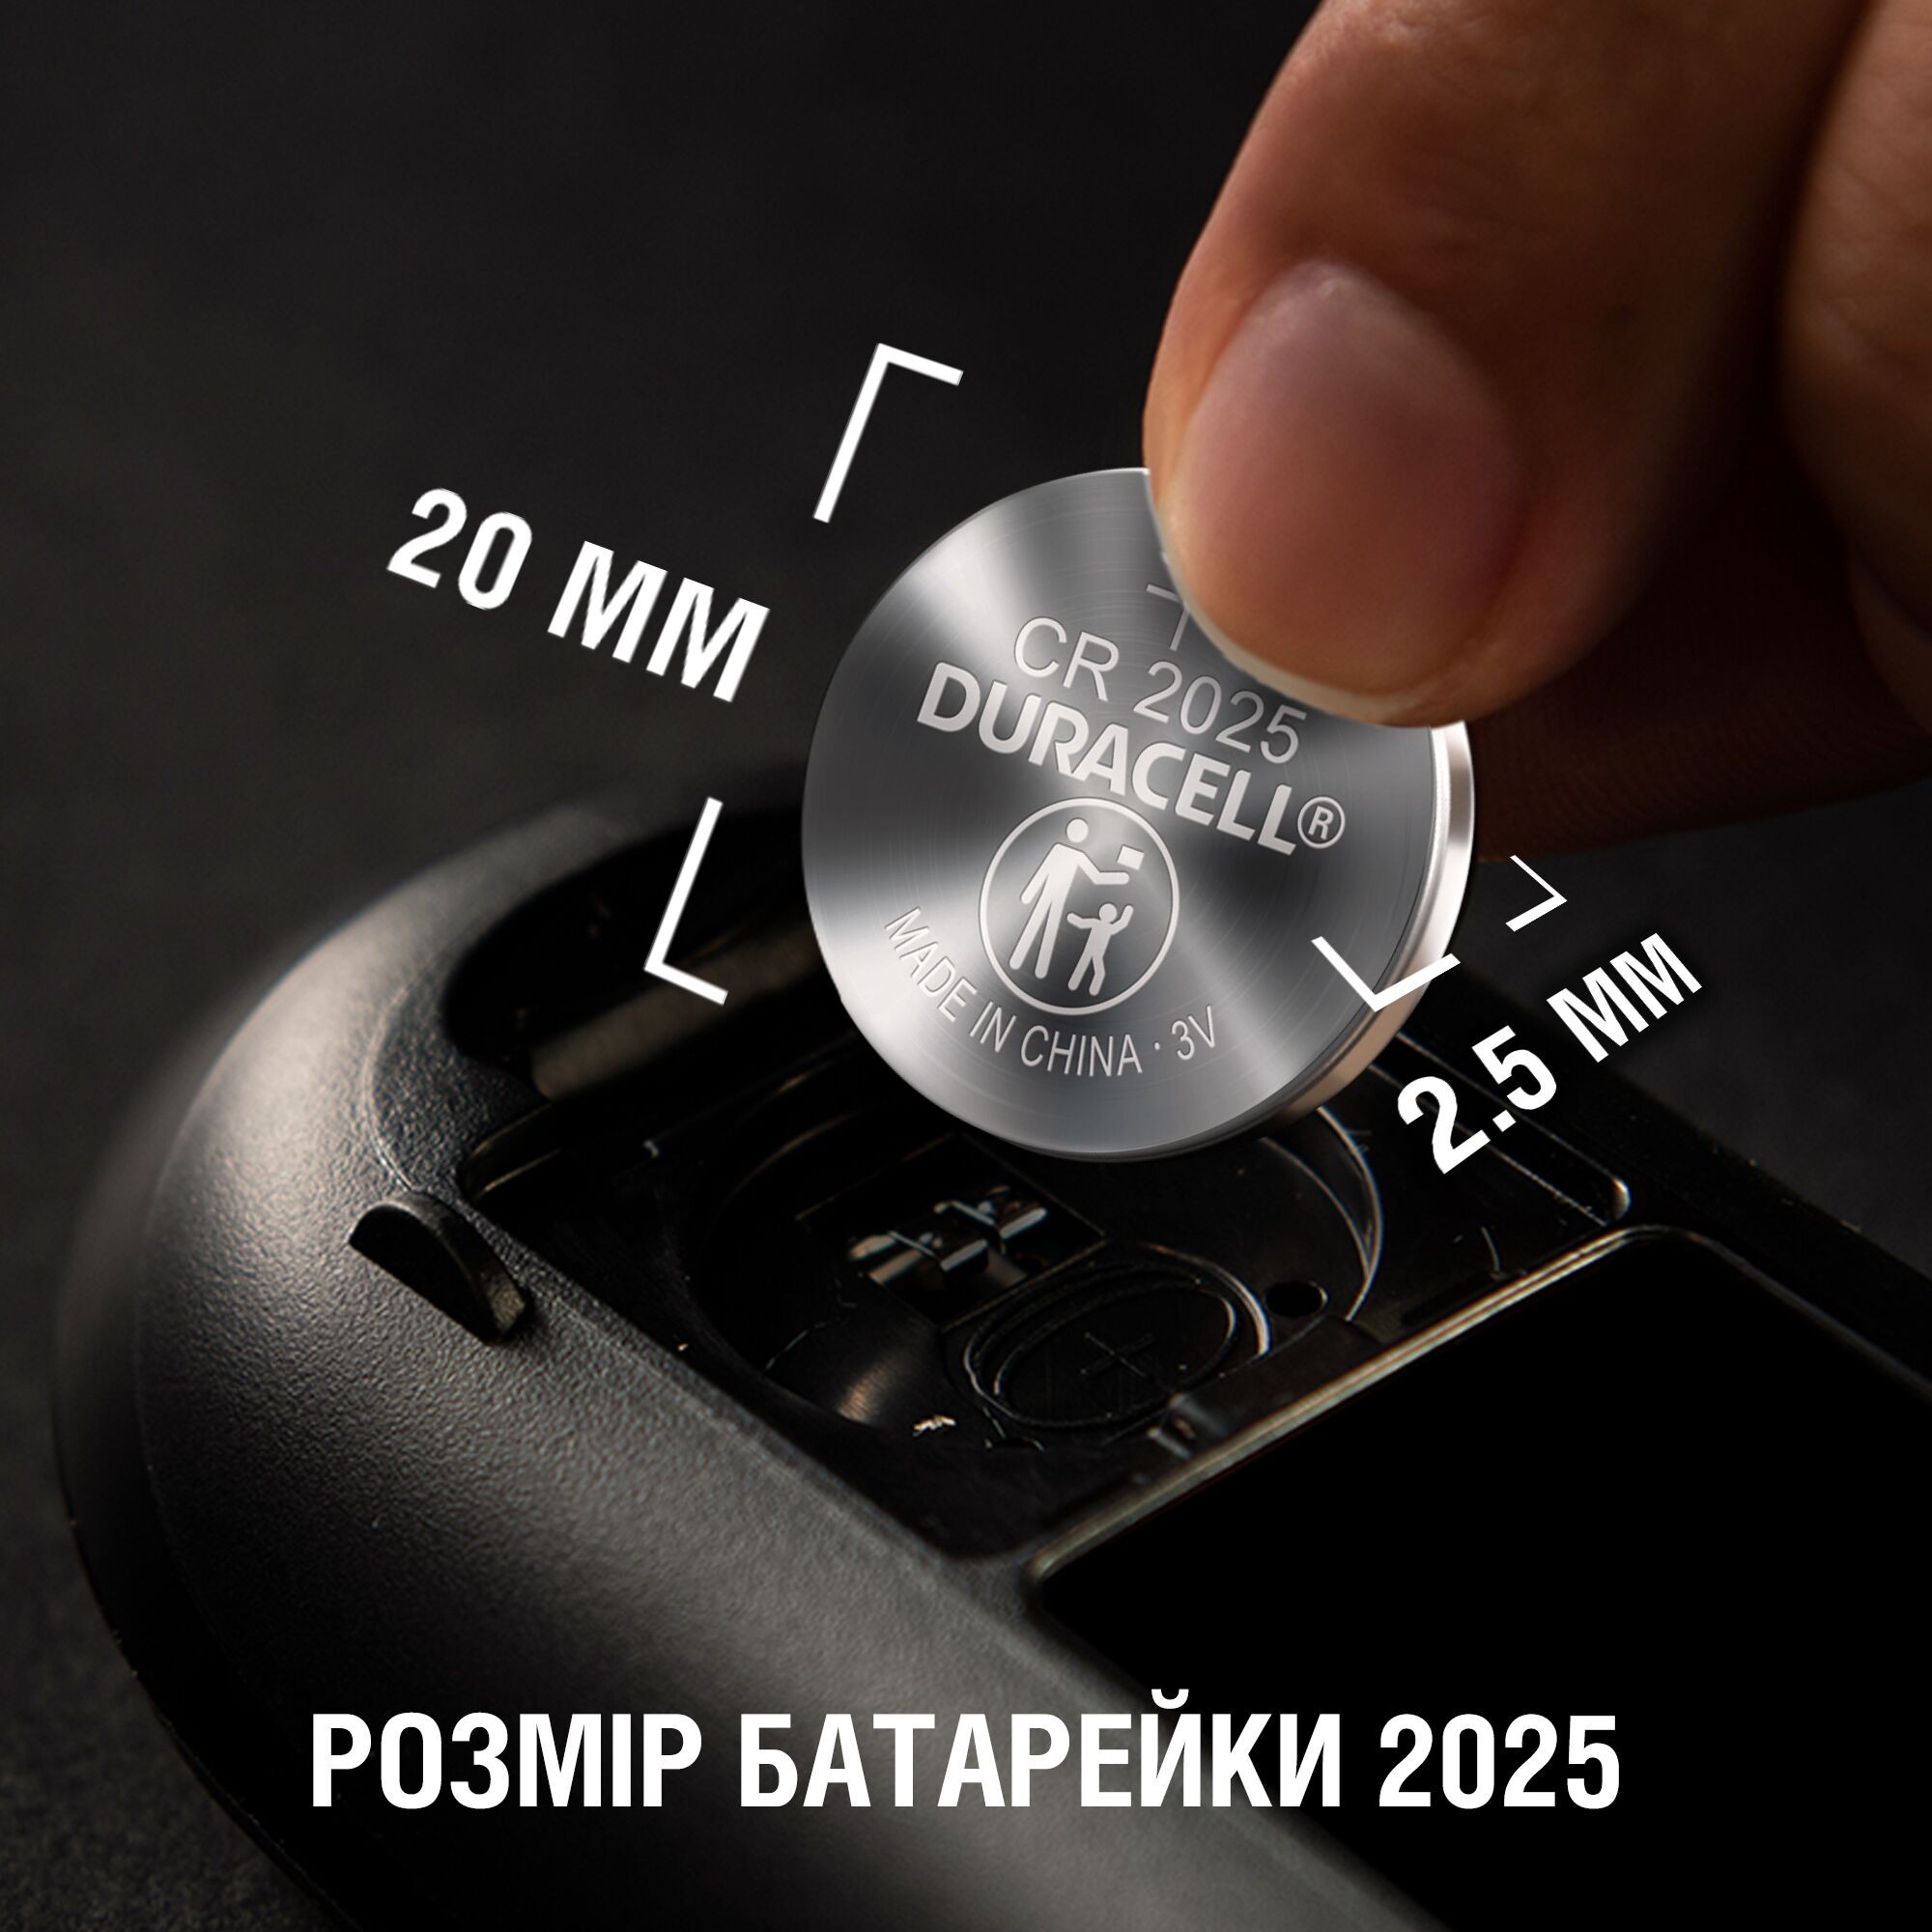 Батарейка Duracell CR 2025 / DL 2025 * 2 (5000394203907 / 5008922) инструкция - изображение 6